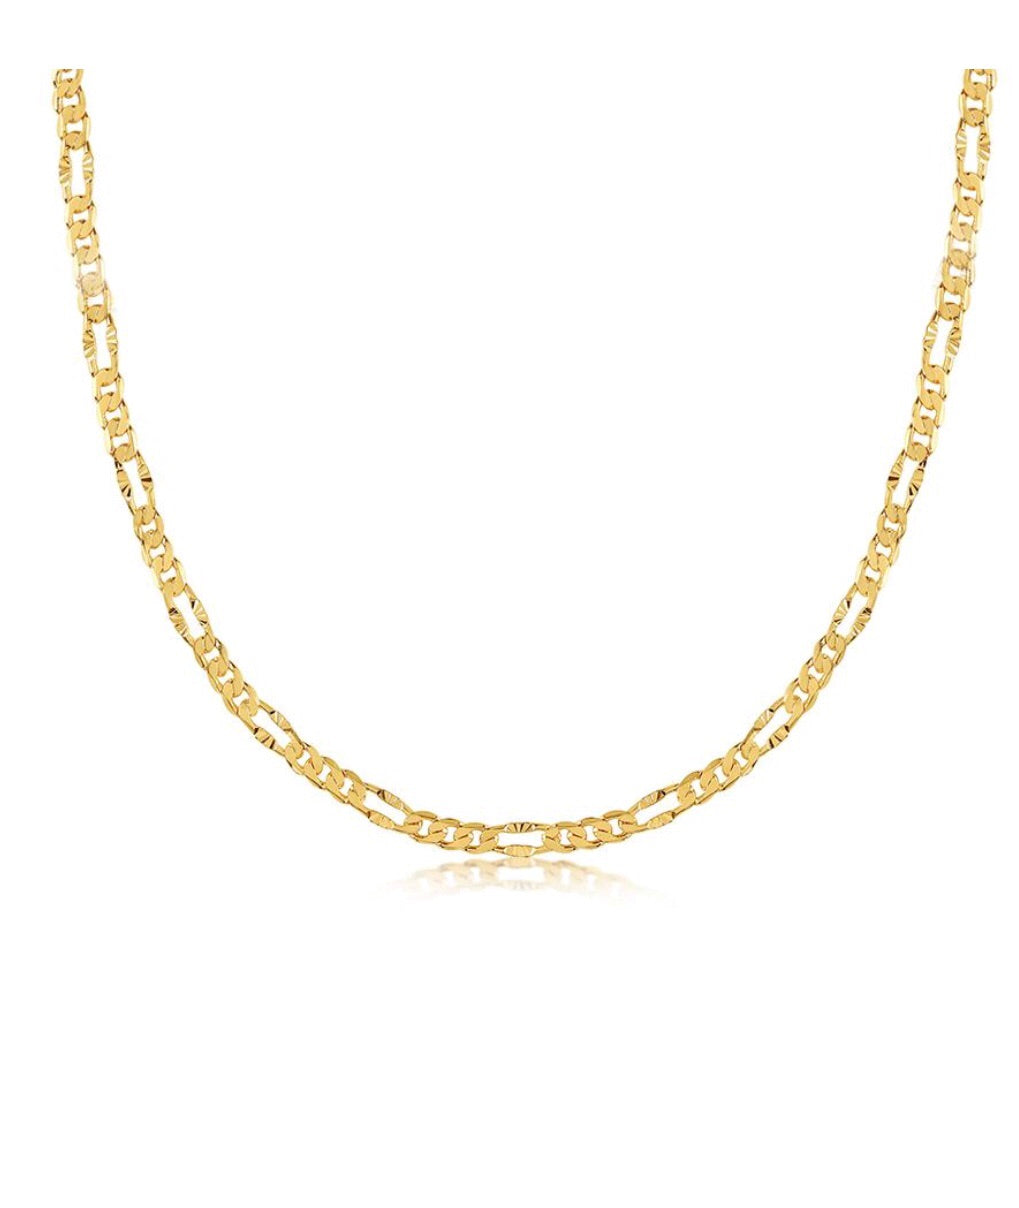 OC Boutique Vintage Gold Chain Necklace gold filled vivianna d otanon 